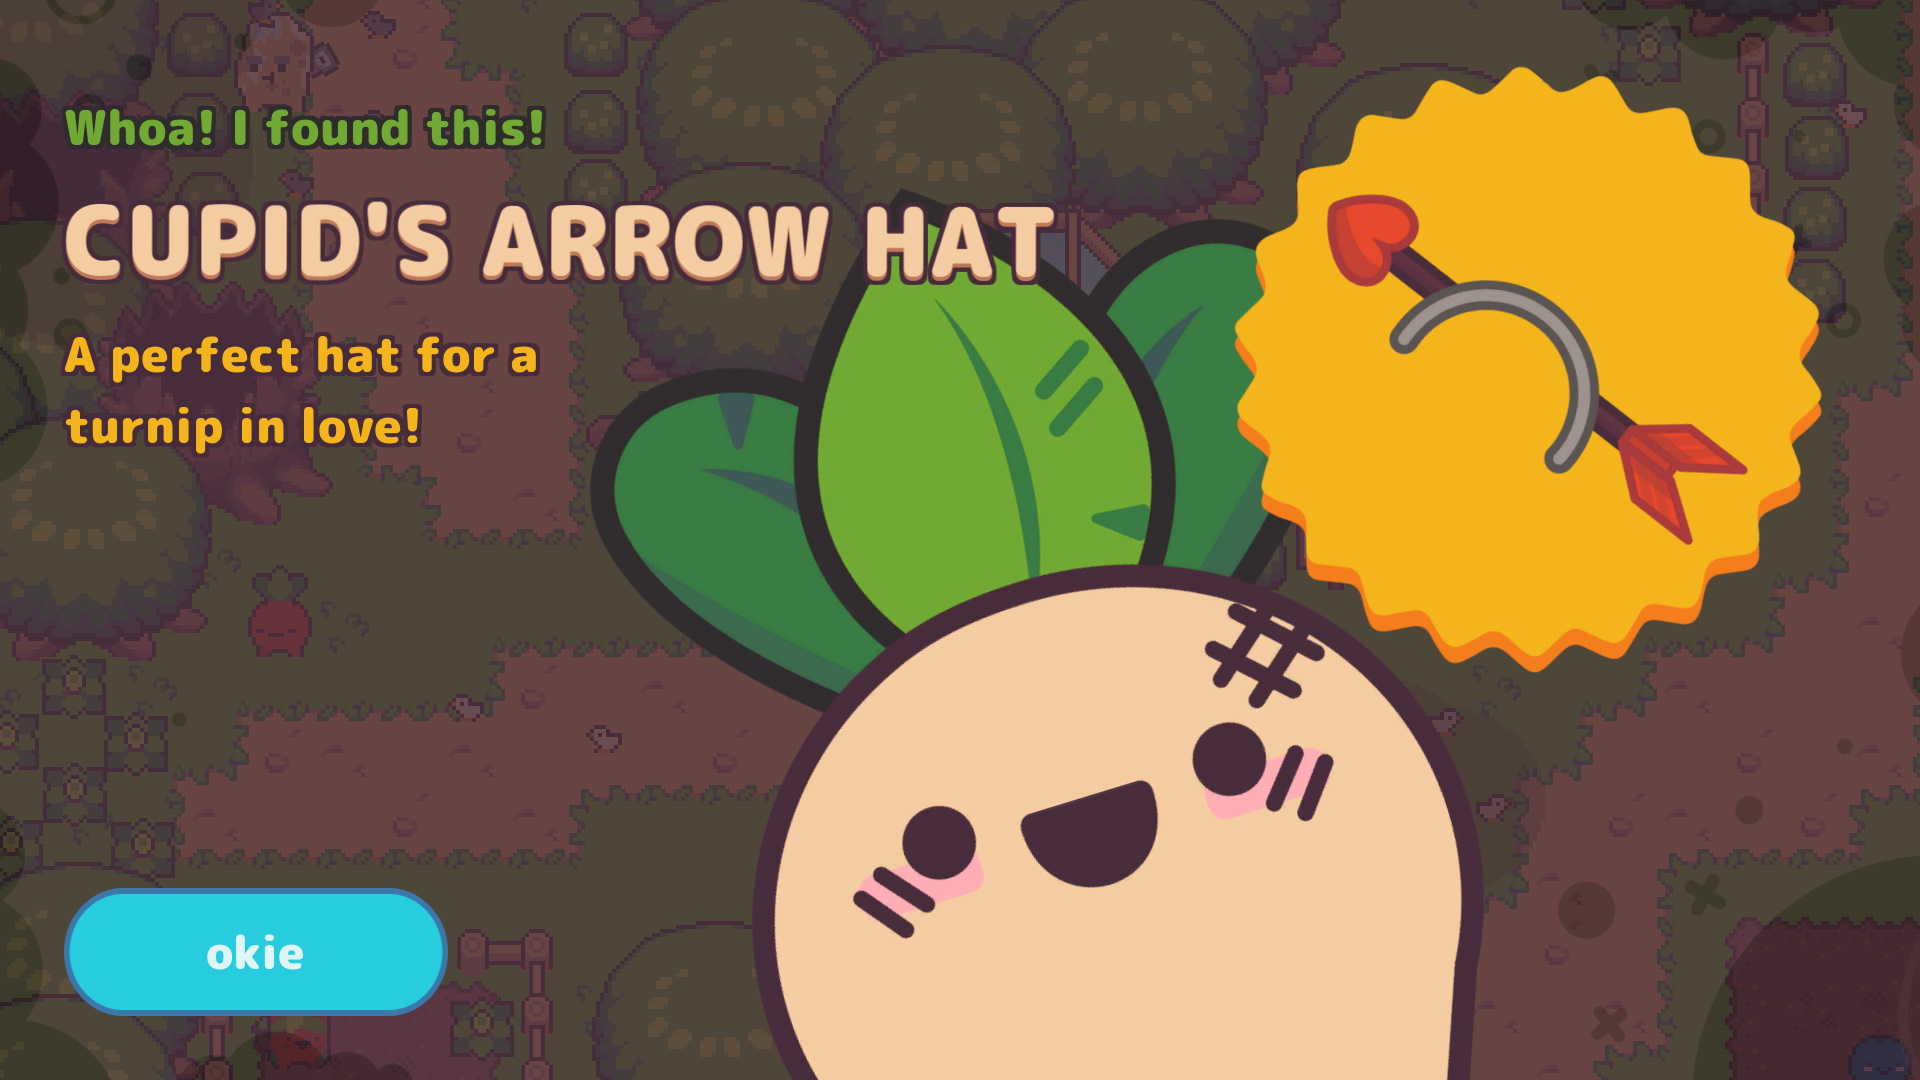 Woah! I found a Cupid's Arrow hat!